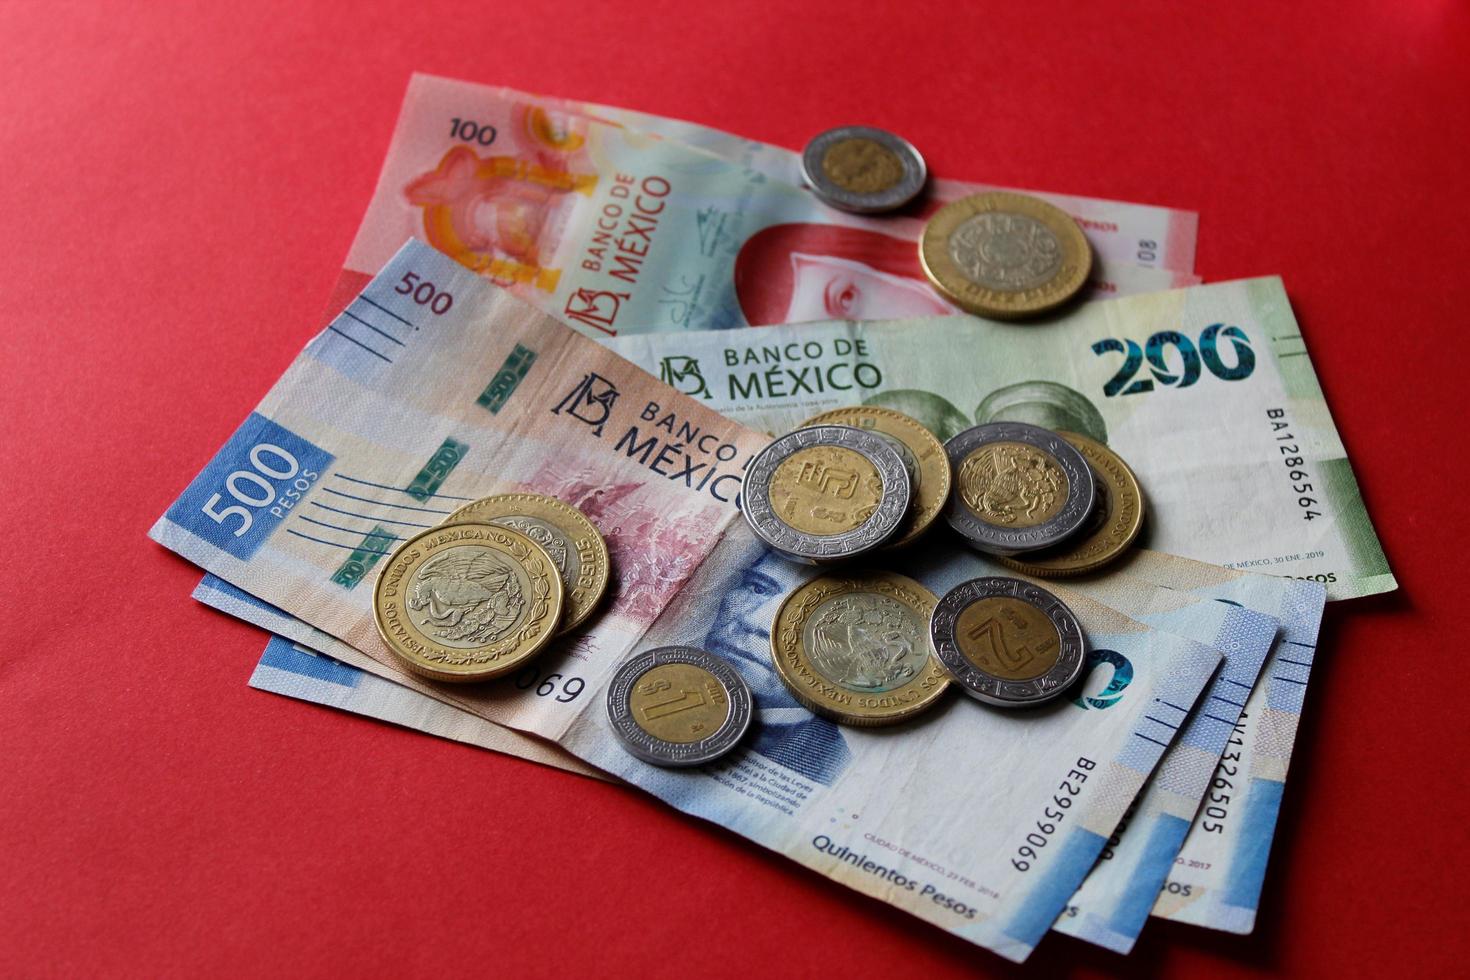 Monedas mexicanas y billetes de diferente denominación sobre el fondo rojo. foto